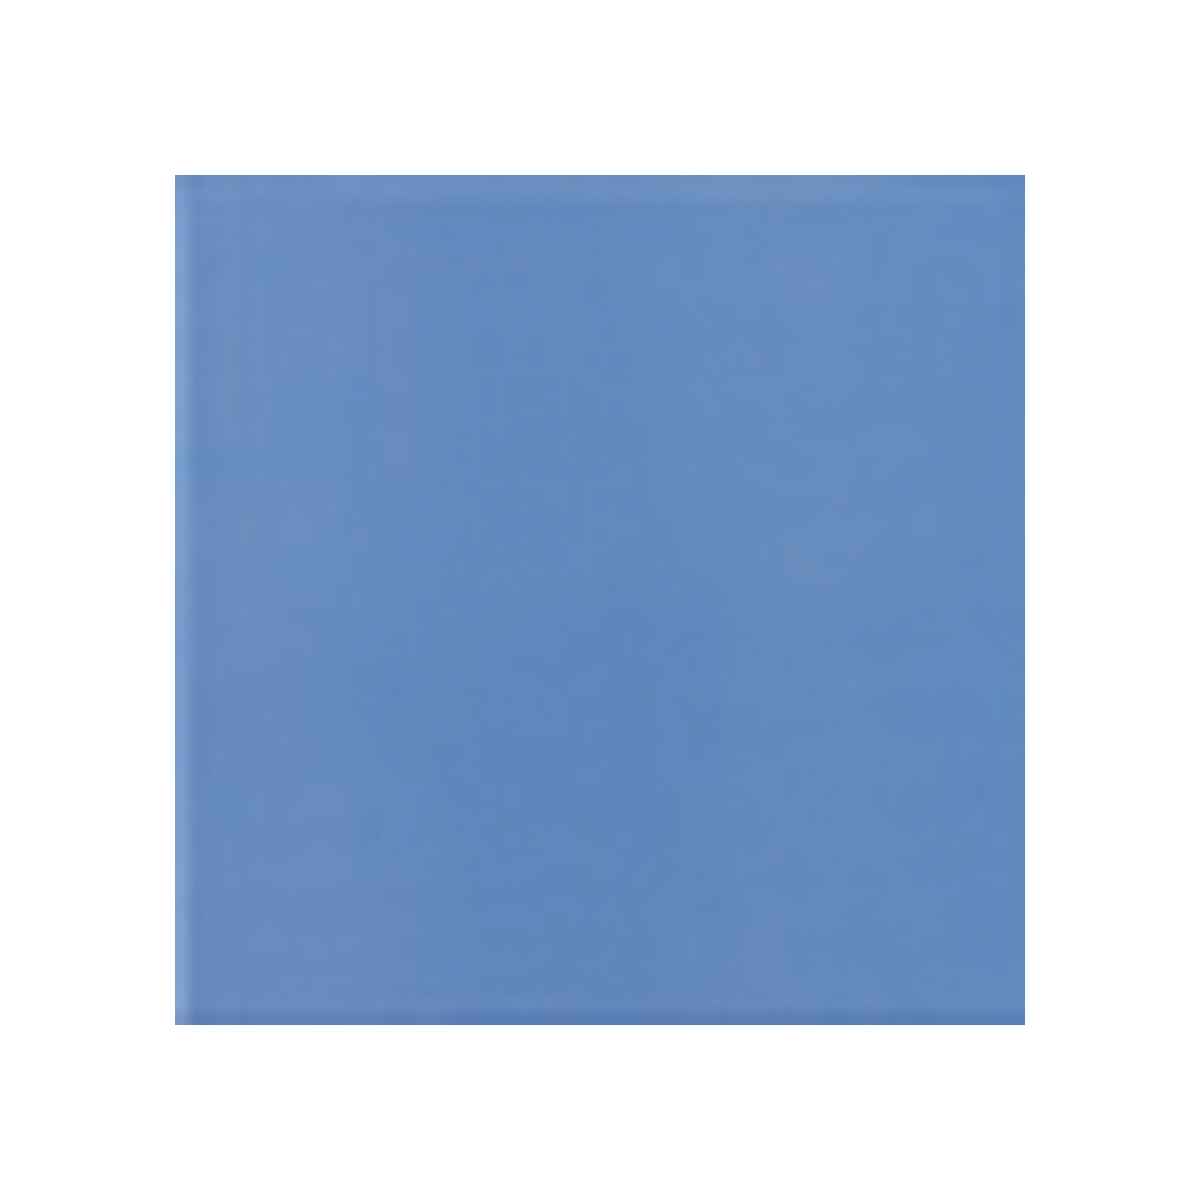 Cor azul claro mate - Coleção Cores Mate - Marca Mainzu